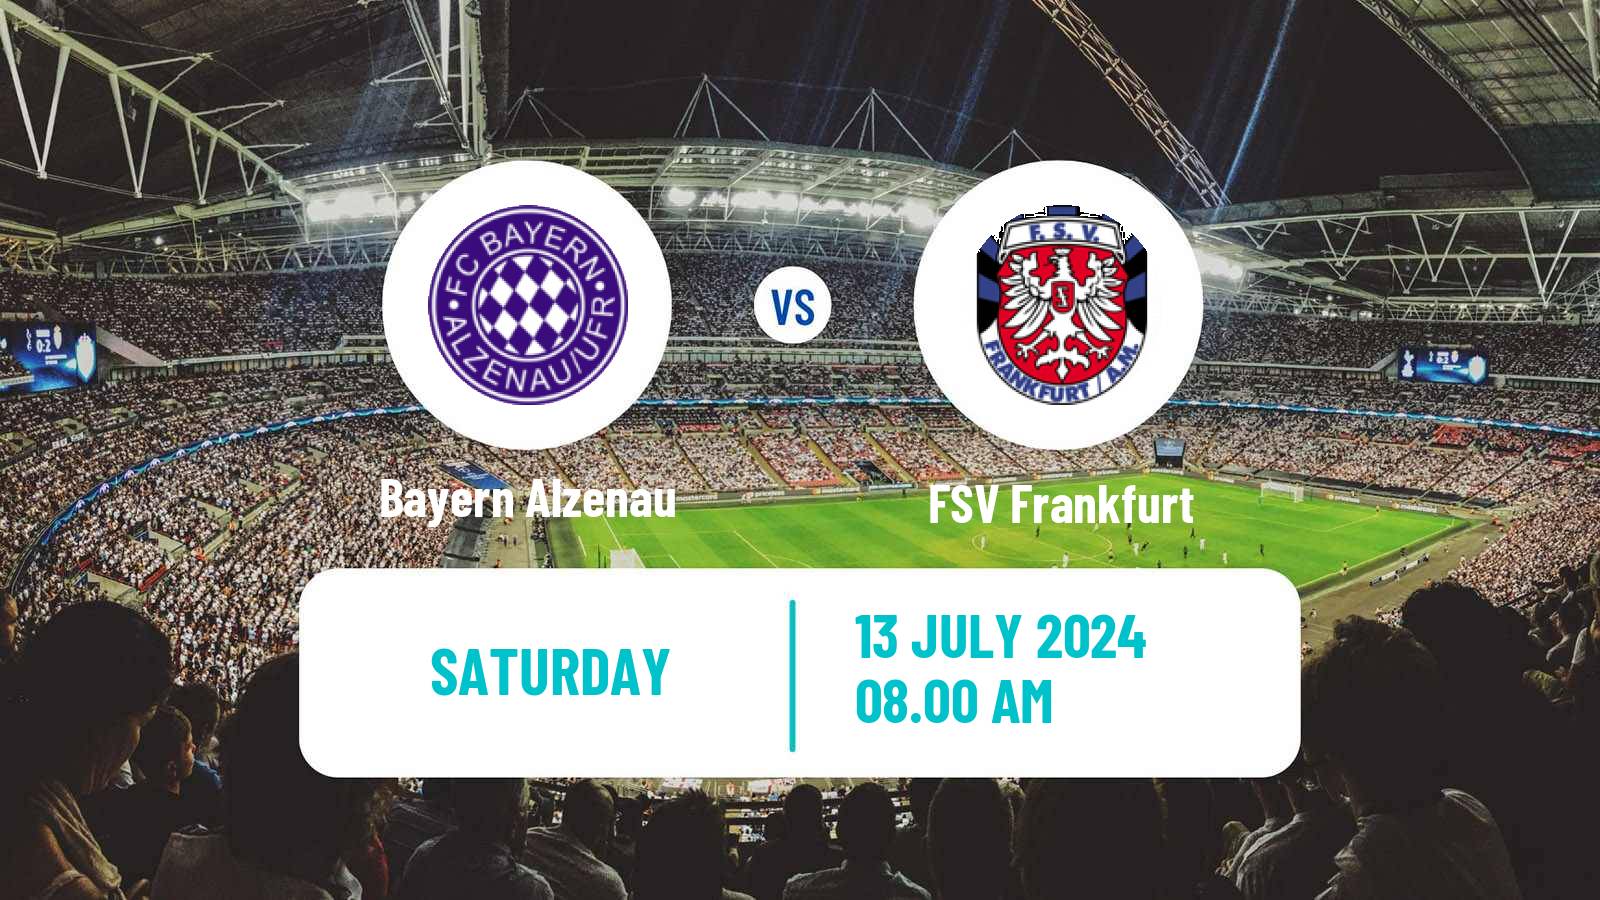 Soccer Club Friendly Bayern Alzenau - FSV Frankfurt